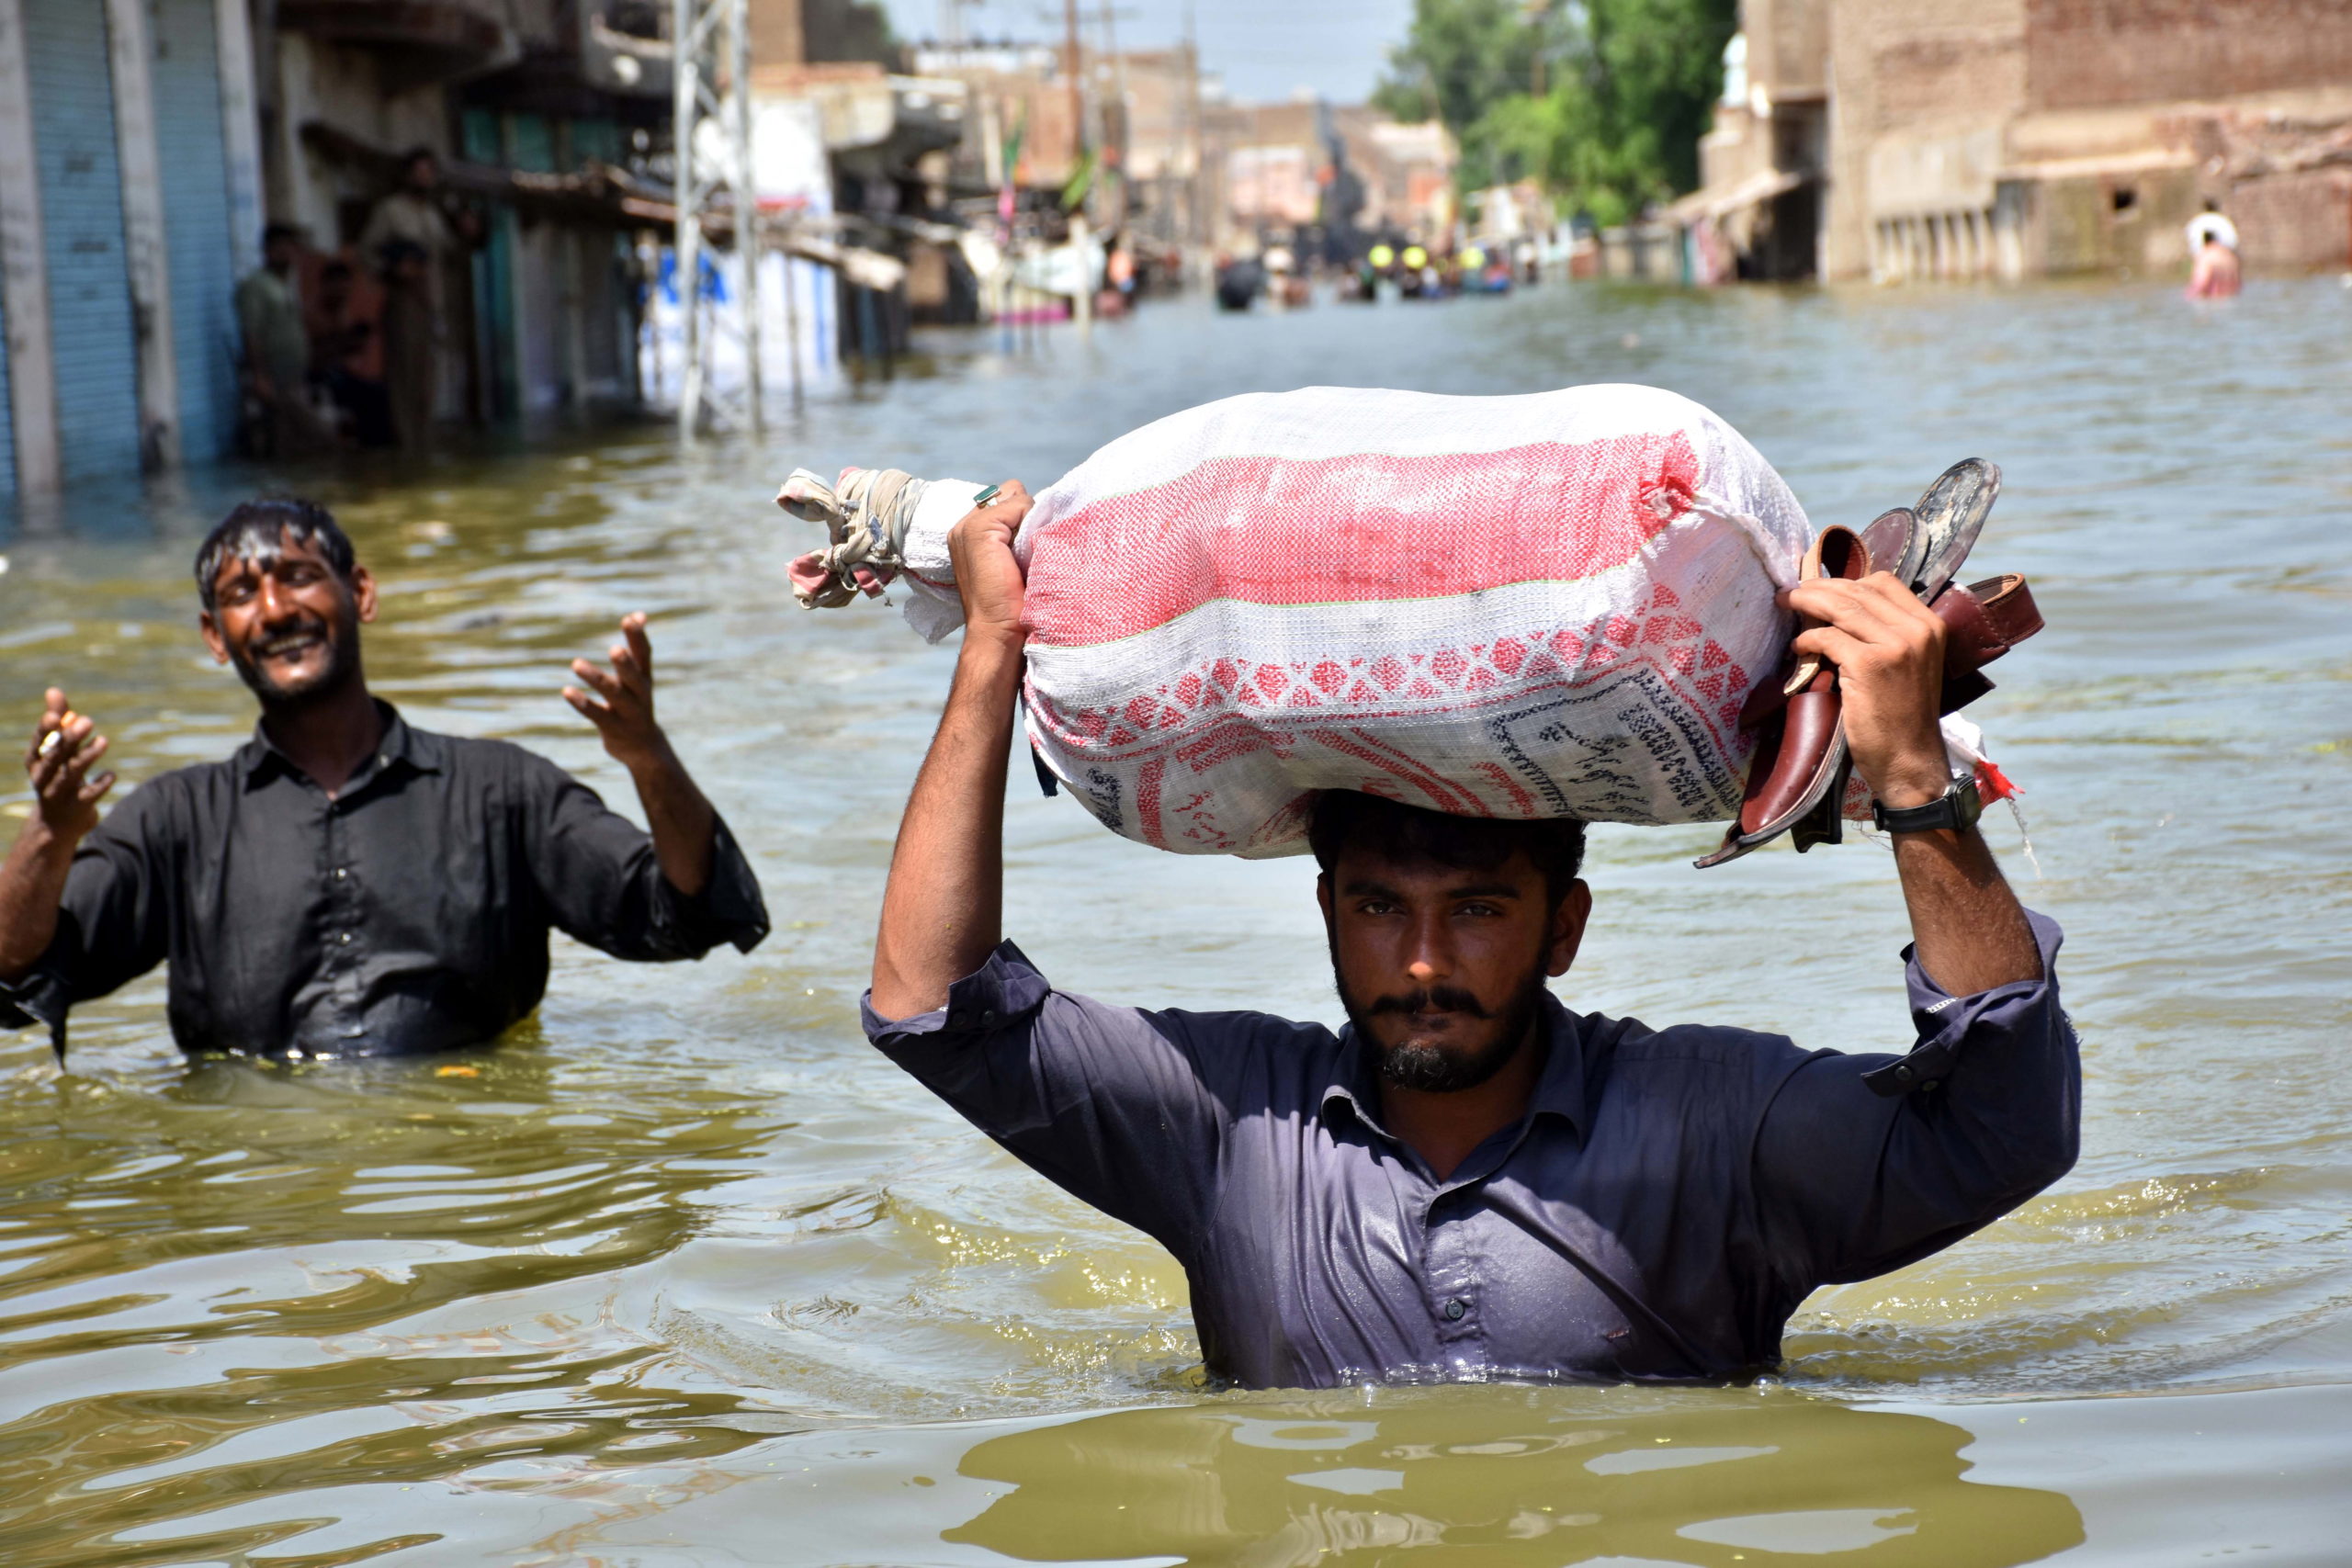 Φονικές πλημμύρες στο Πακιστάν – Κίνδυνος εξάπλωσης ασθενειών από έλλειψη πόσιμου νερού